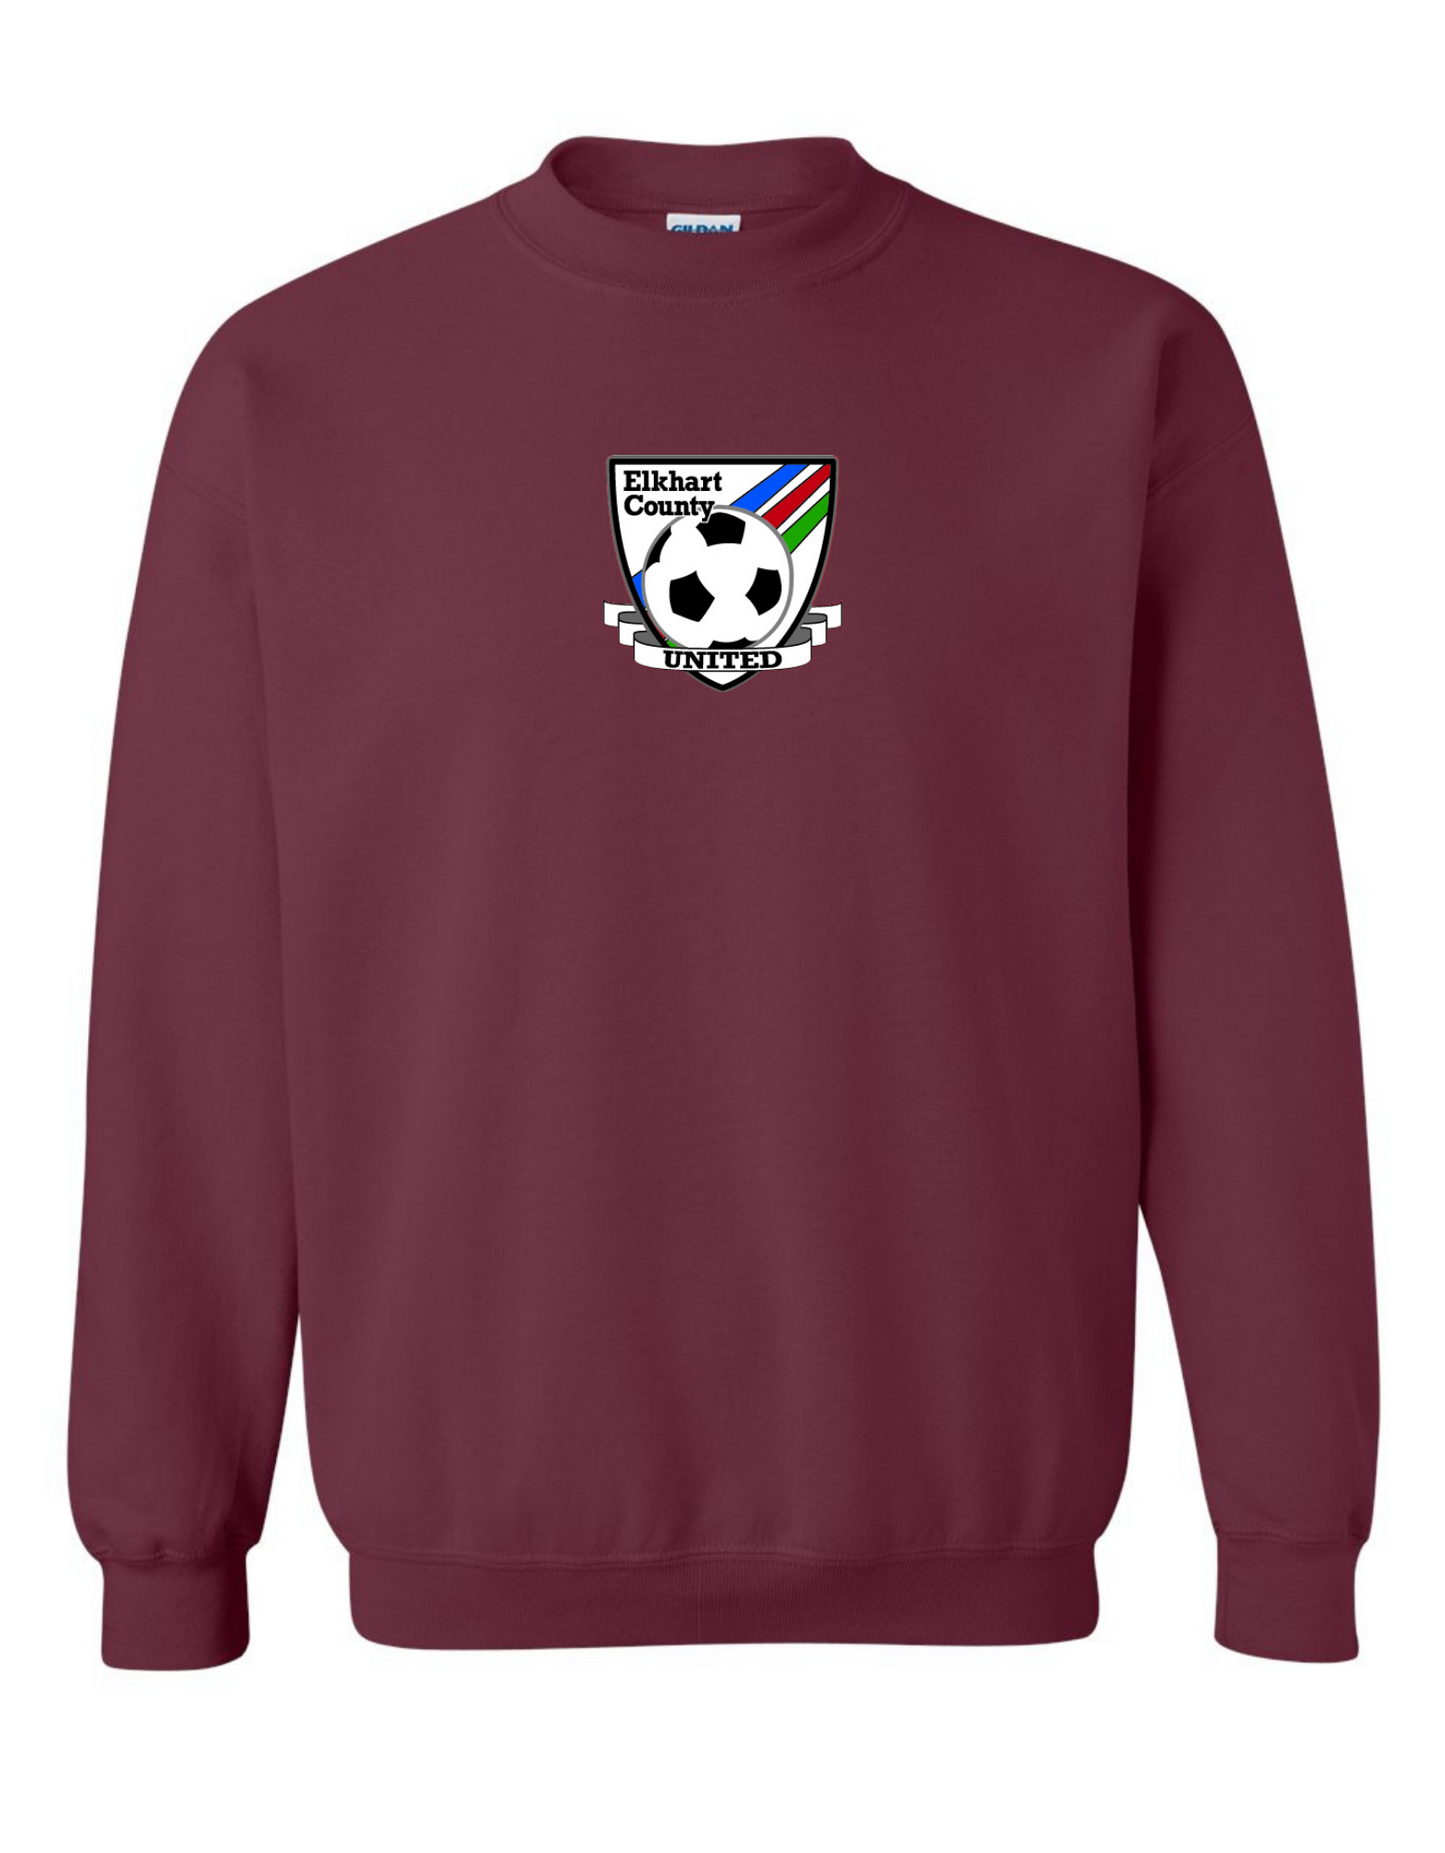 Club Logo Crewneck Sweatshirt - Youth